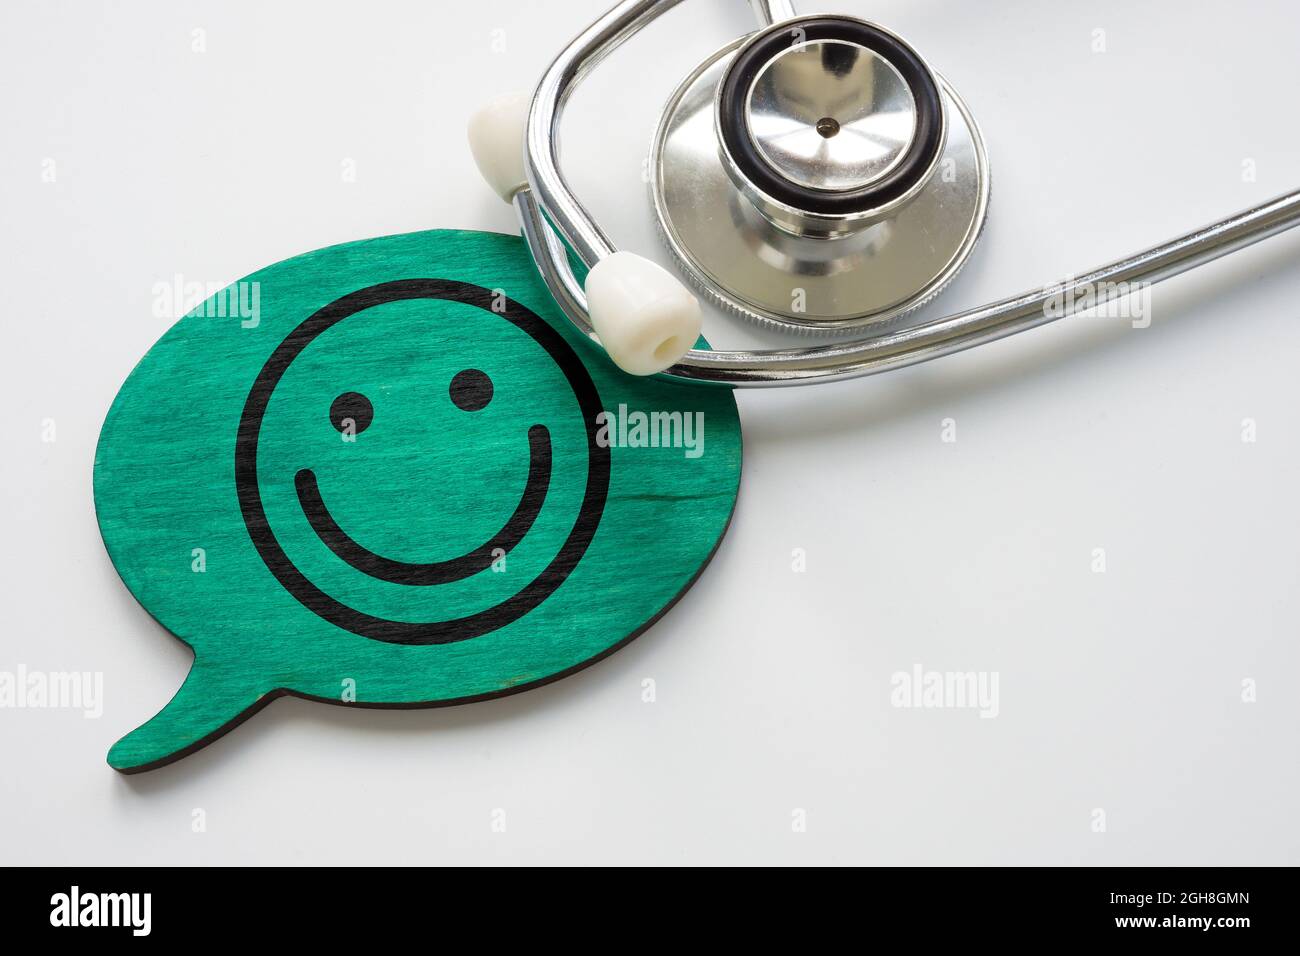 Patientenzufriedenheitskonzept. Stethoskop und Smiley-Gesicht. Stockfoto